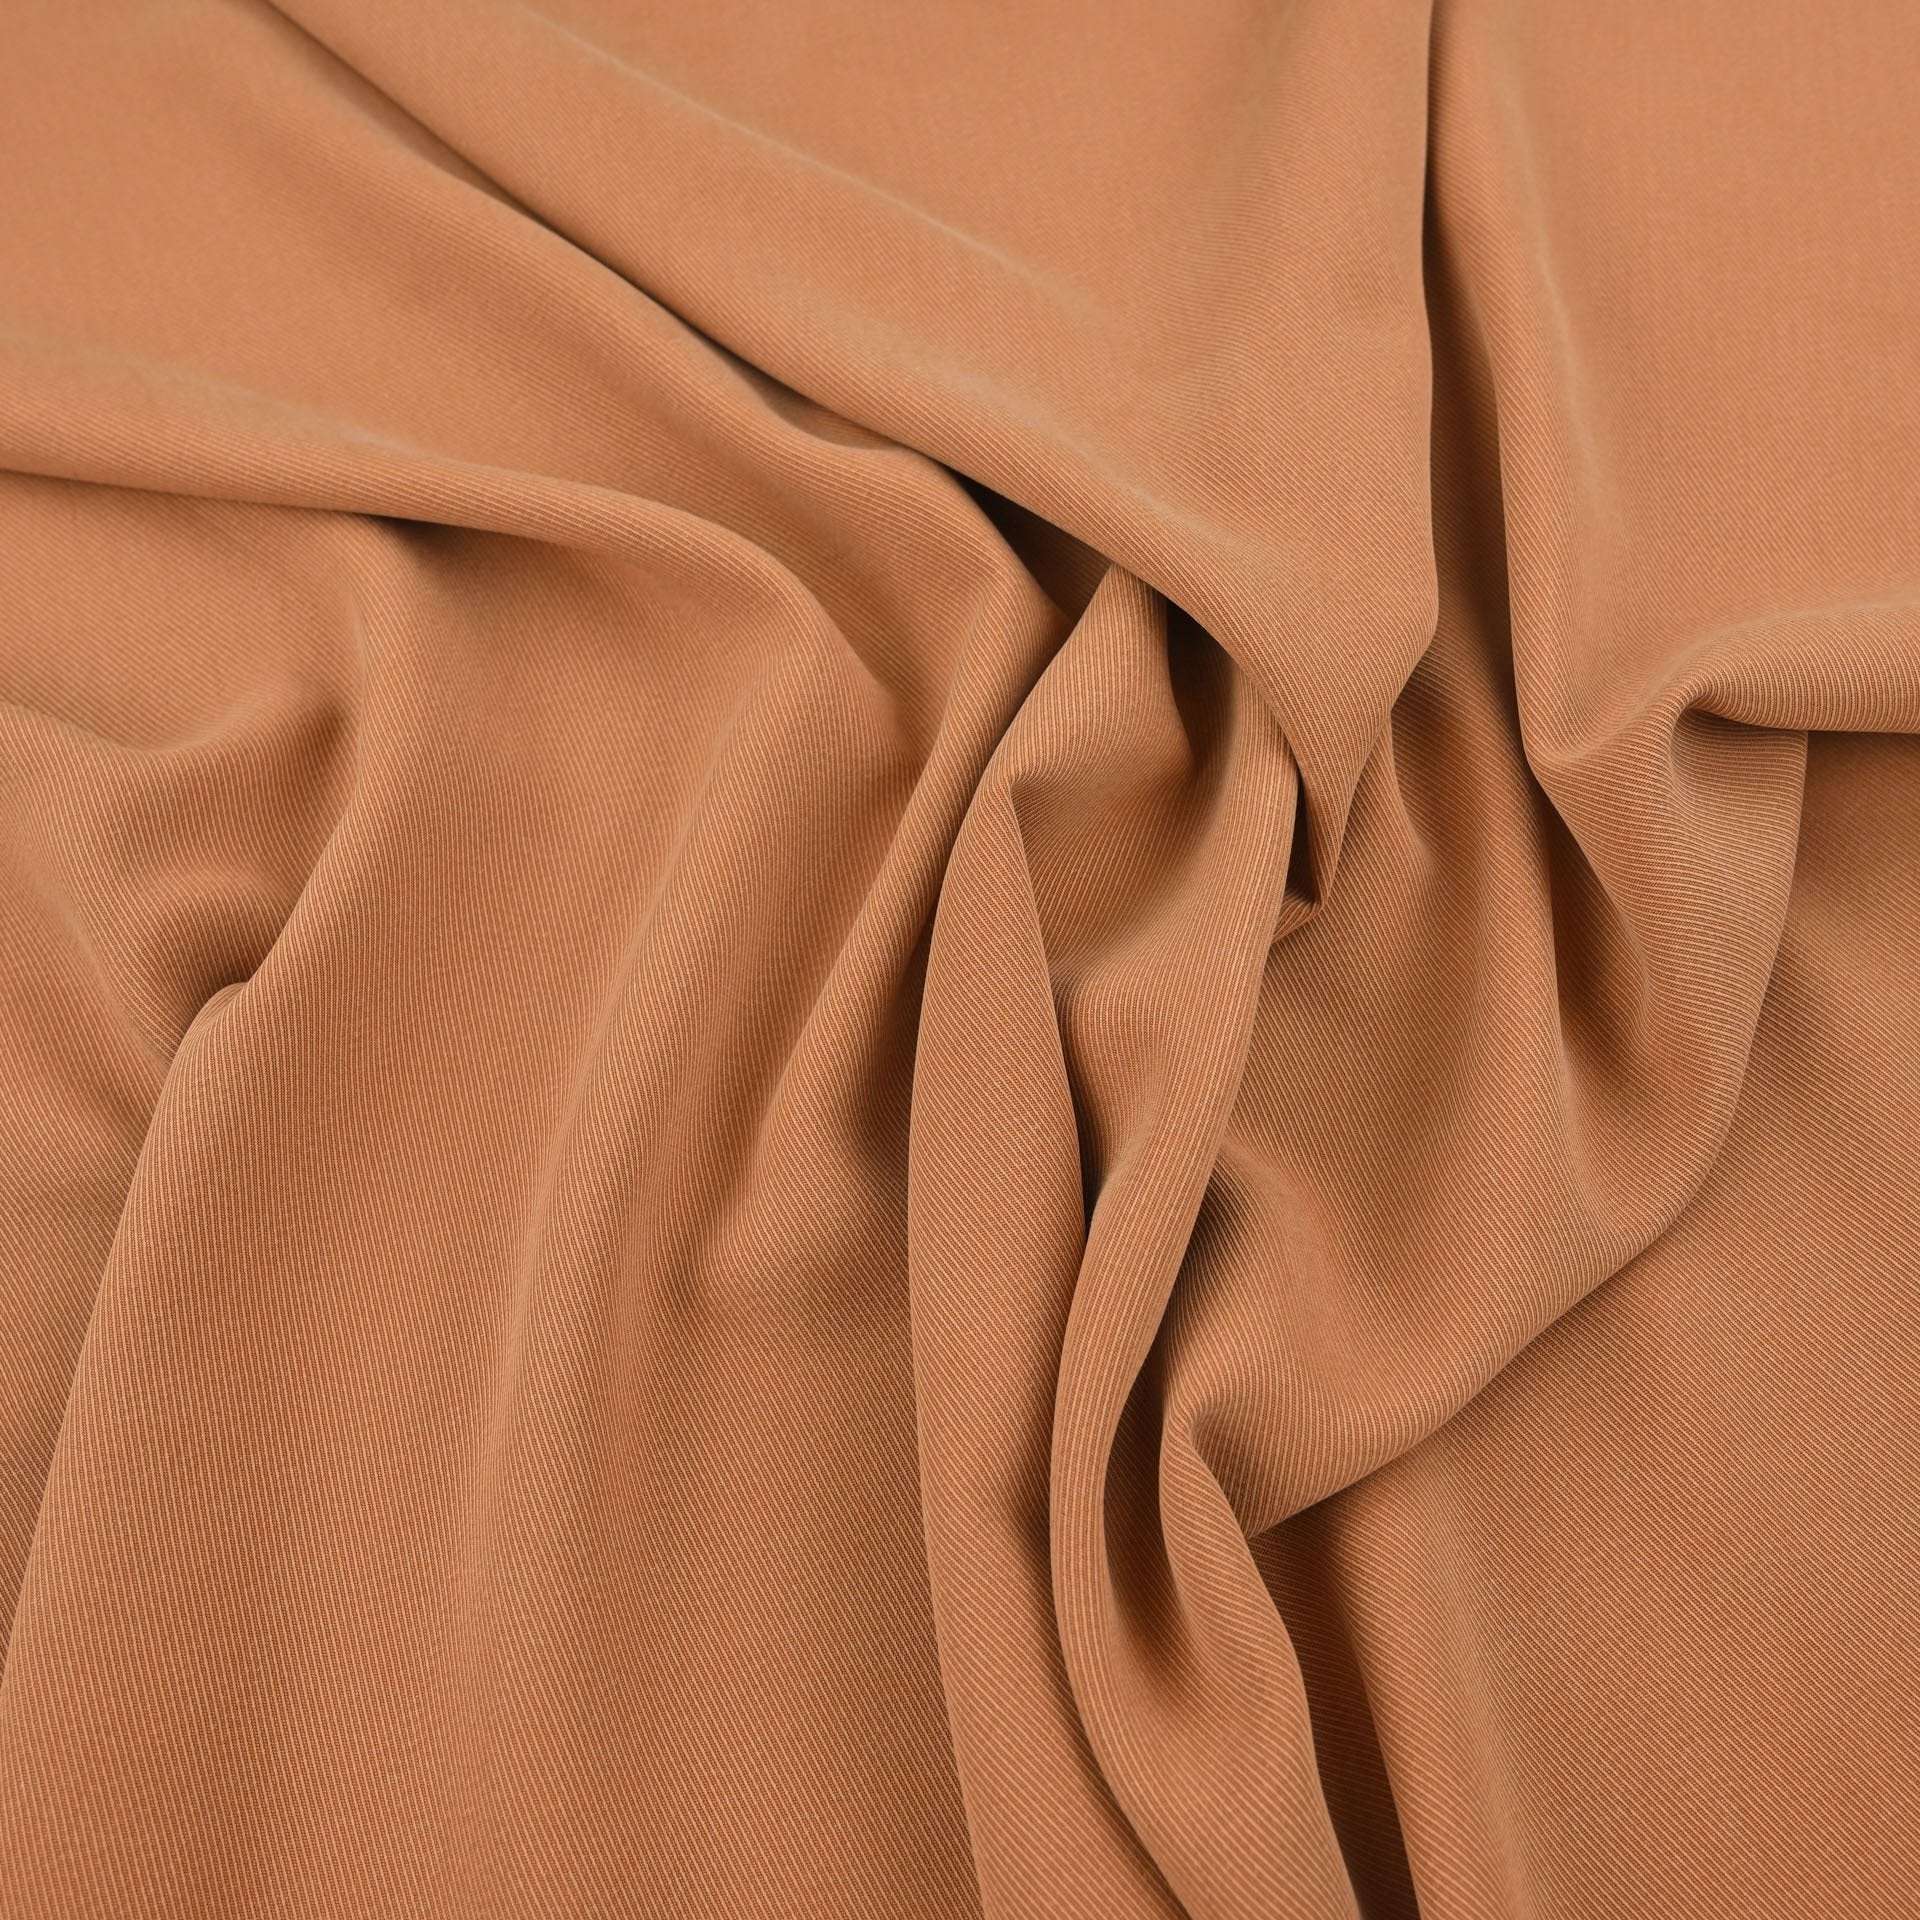 Copper Brown Twill Fabric 6183